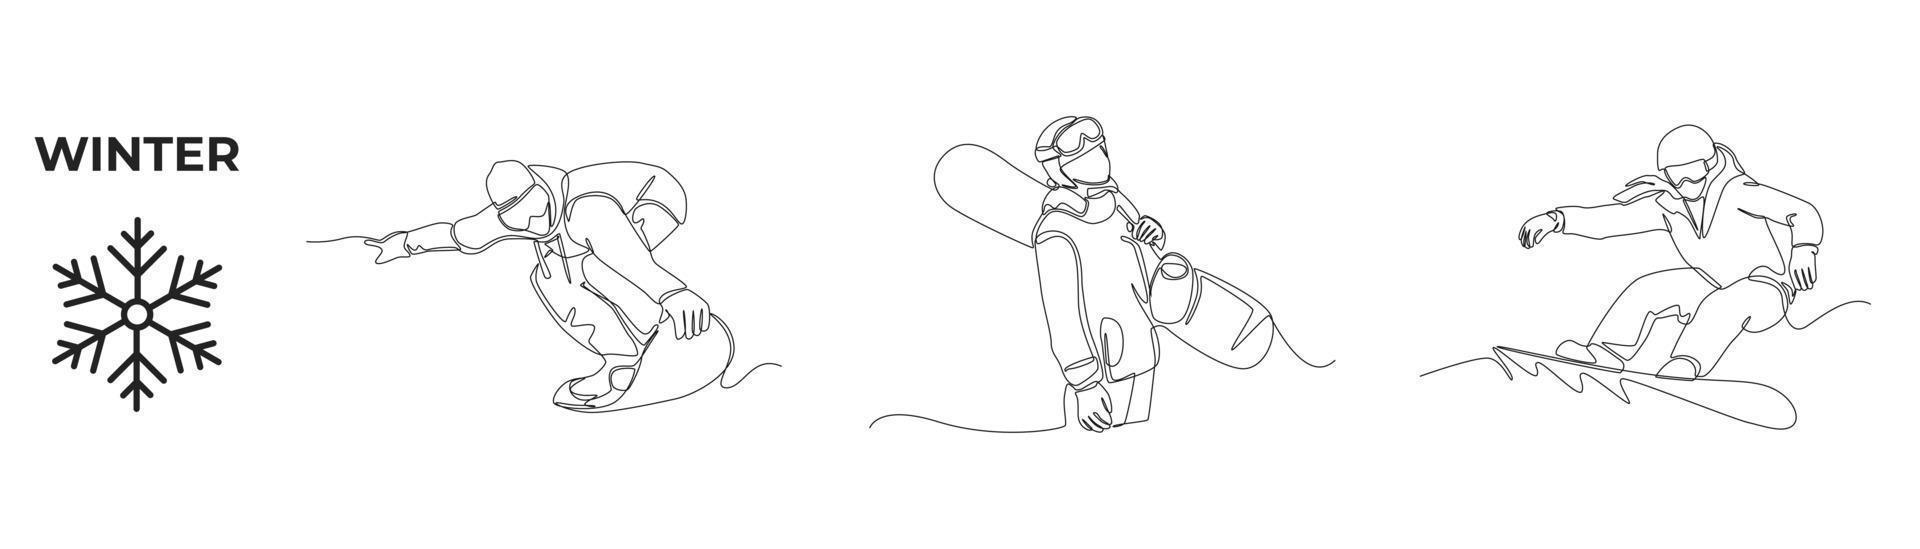 dibujo de una sola línea actividades de invierno y juego deportivo. niño feliz con snowboarders en invierno. hombre vestido con traje montando snowboard. ilustración de vector gráfico de diseño de dibujo de línea continua.